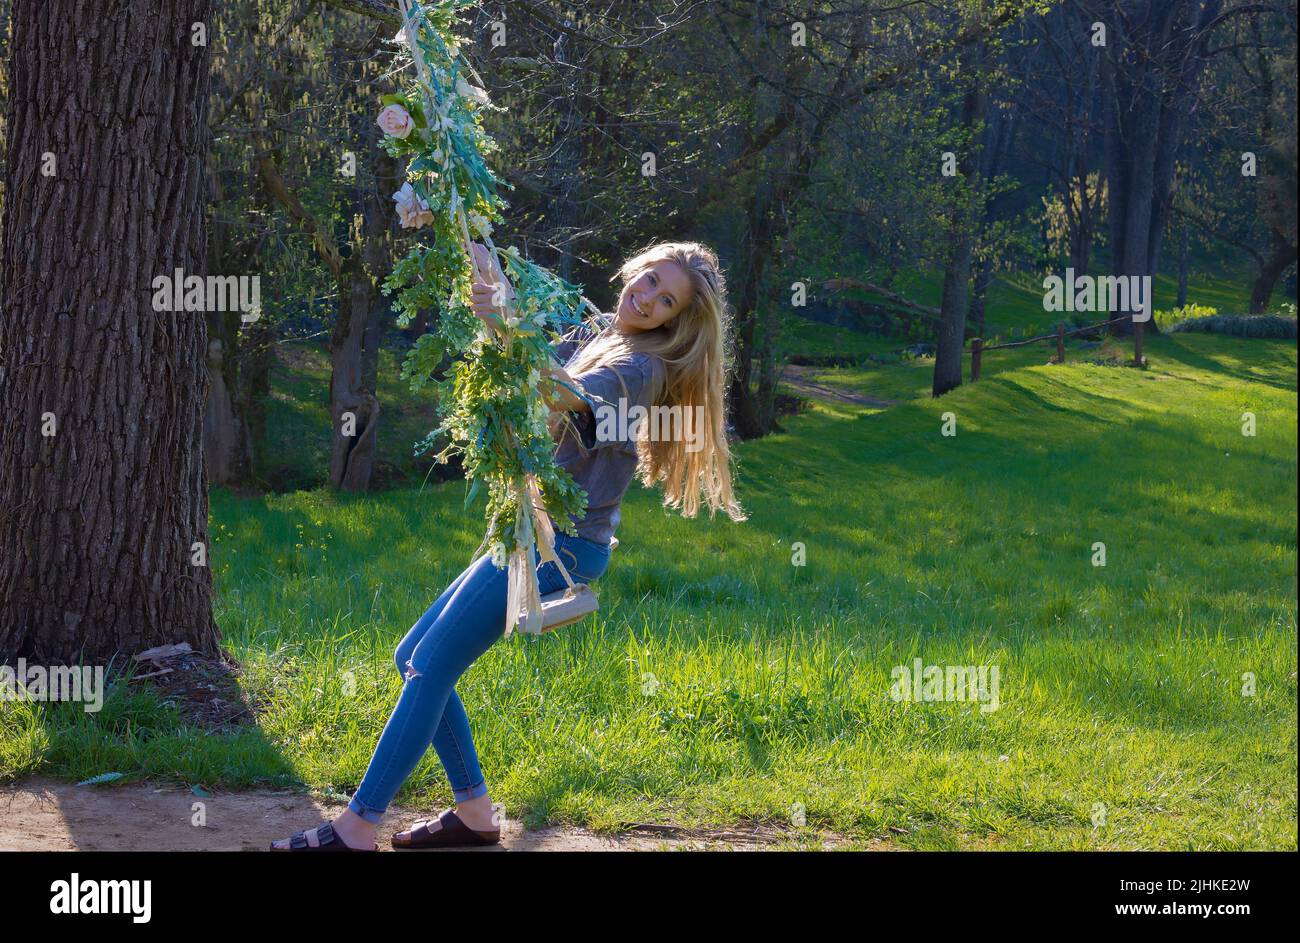 Una mujer joven disfruta balanceándose en un columpio al aire libre decorado con flores. Foto de stock